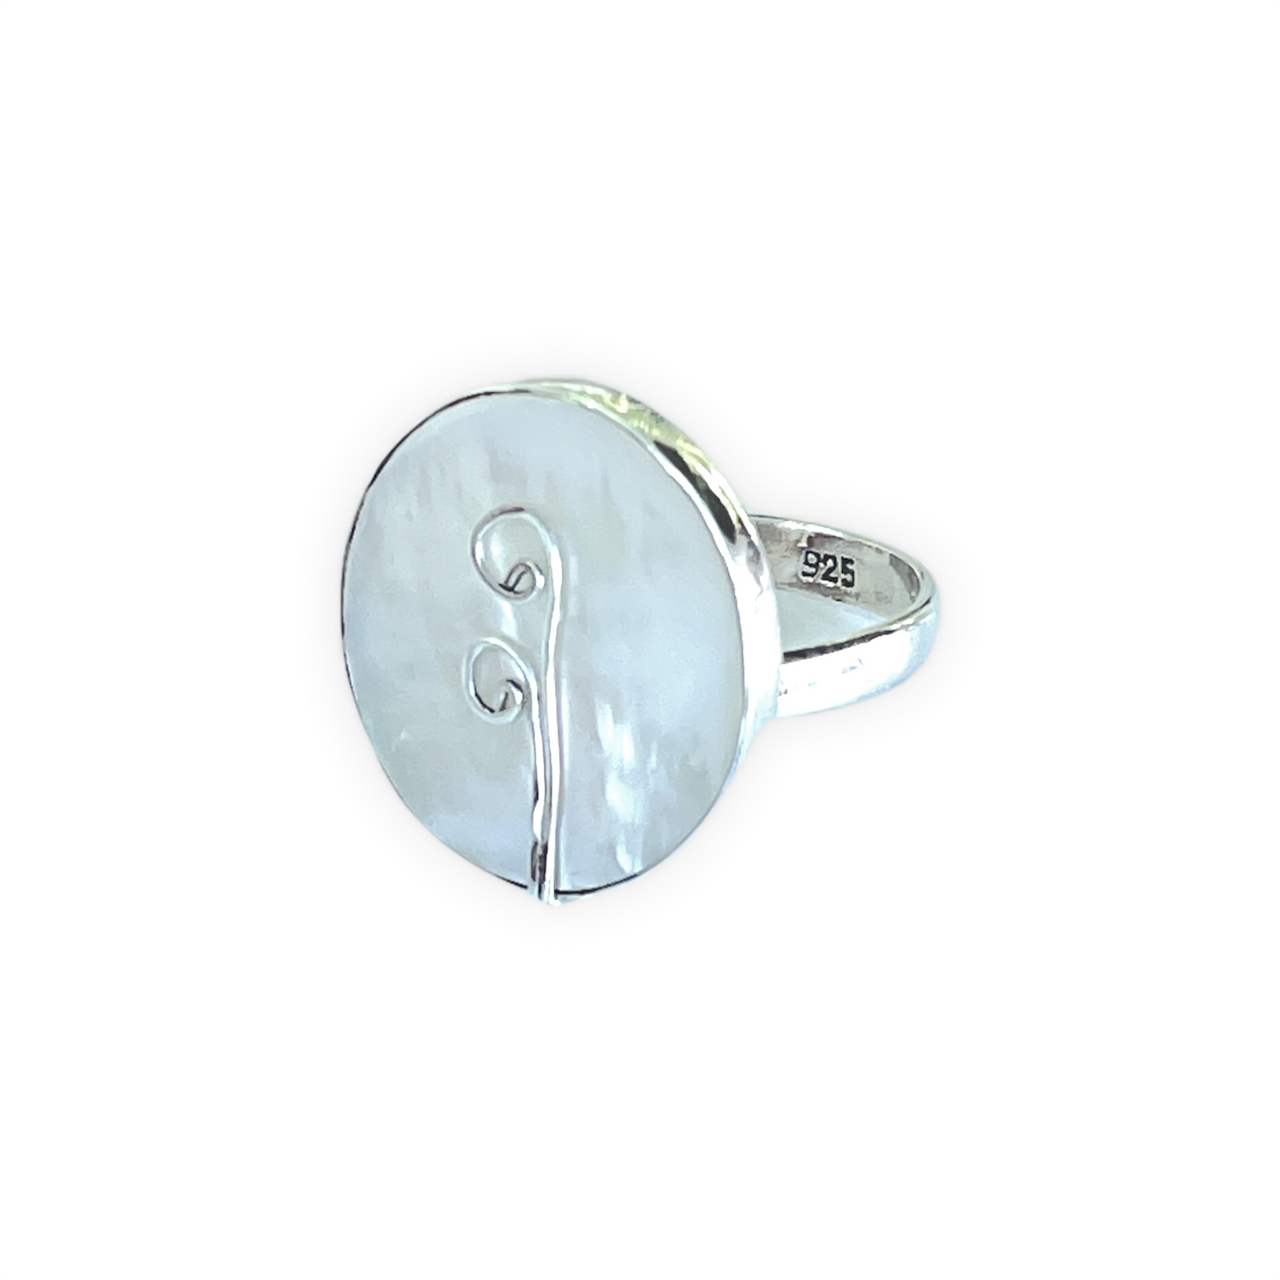 Espectacular anillo de plata de ley con Nácar. Este anillo es ajustable lo que lo hace perfecto. Además es super combinable con tu look favorito. Lateral